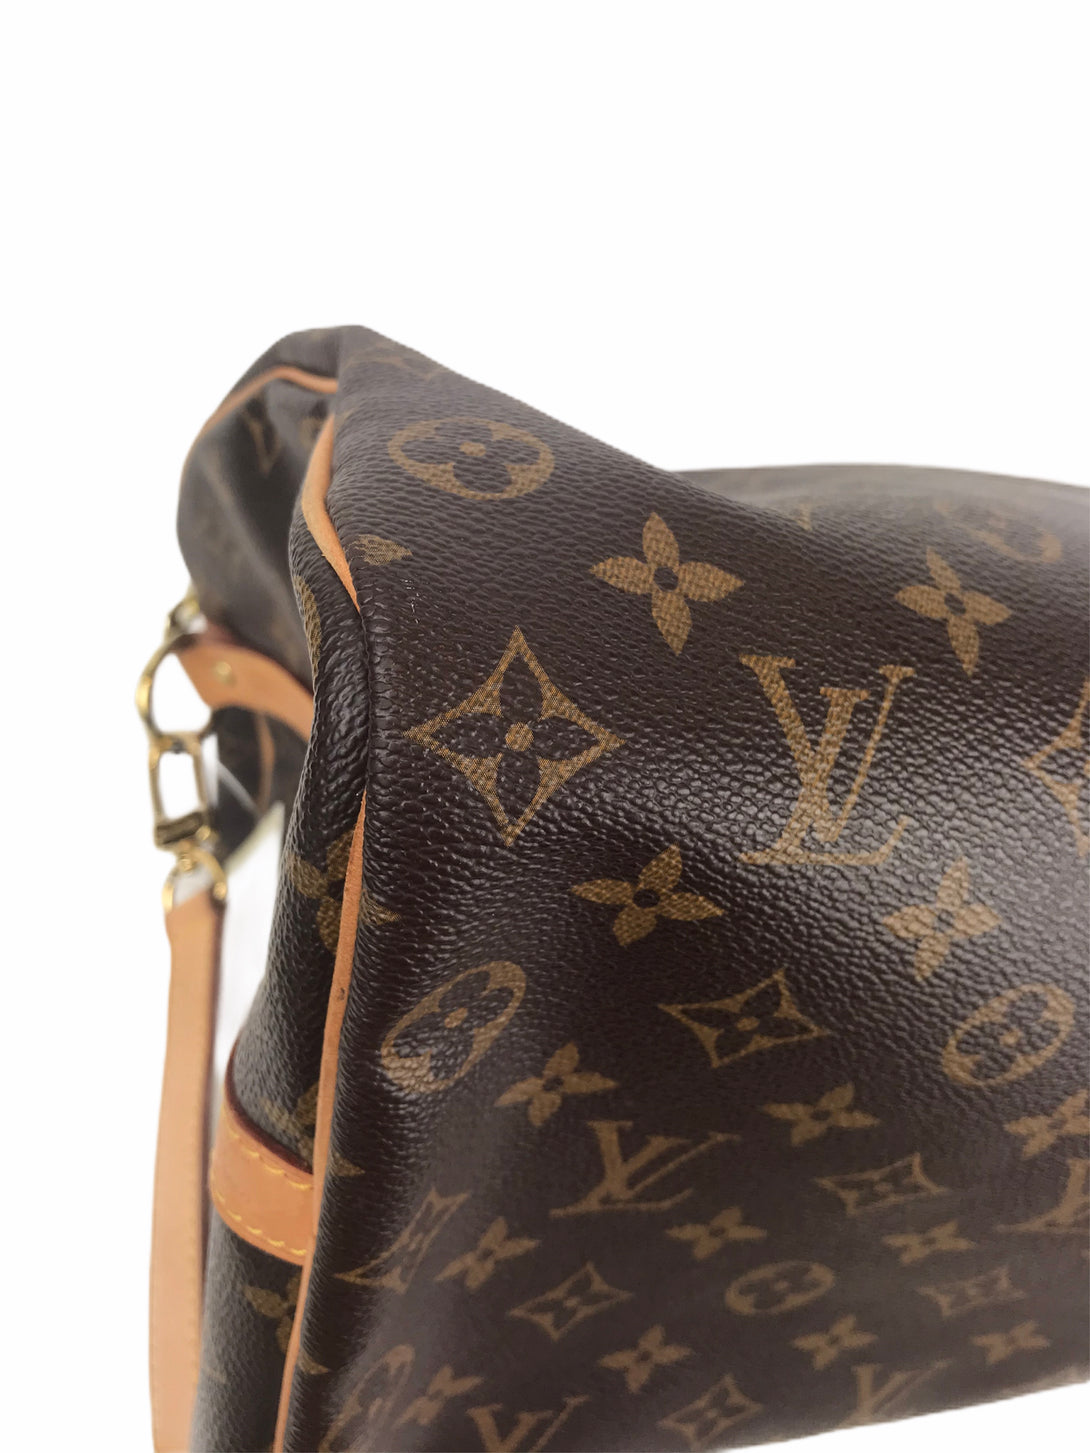 Louis Vuitton Monogram Speedy Bandouliere 35 - As Seen on Instagram 23/08/2020 - Siopaella Designer Exchange